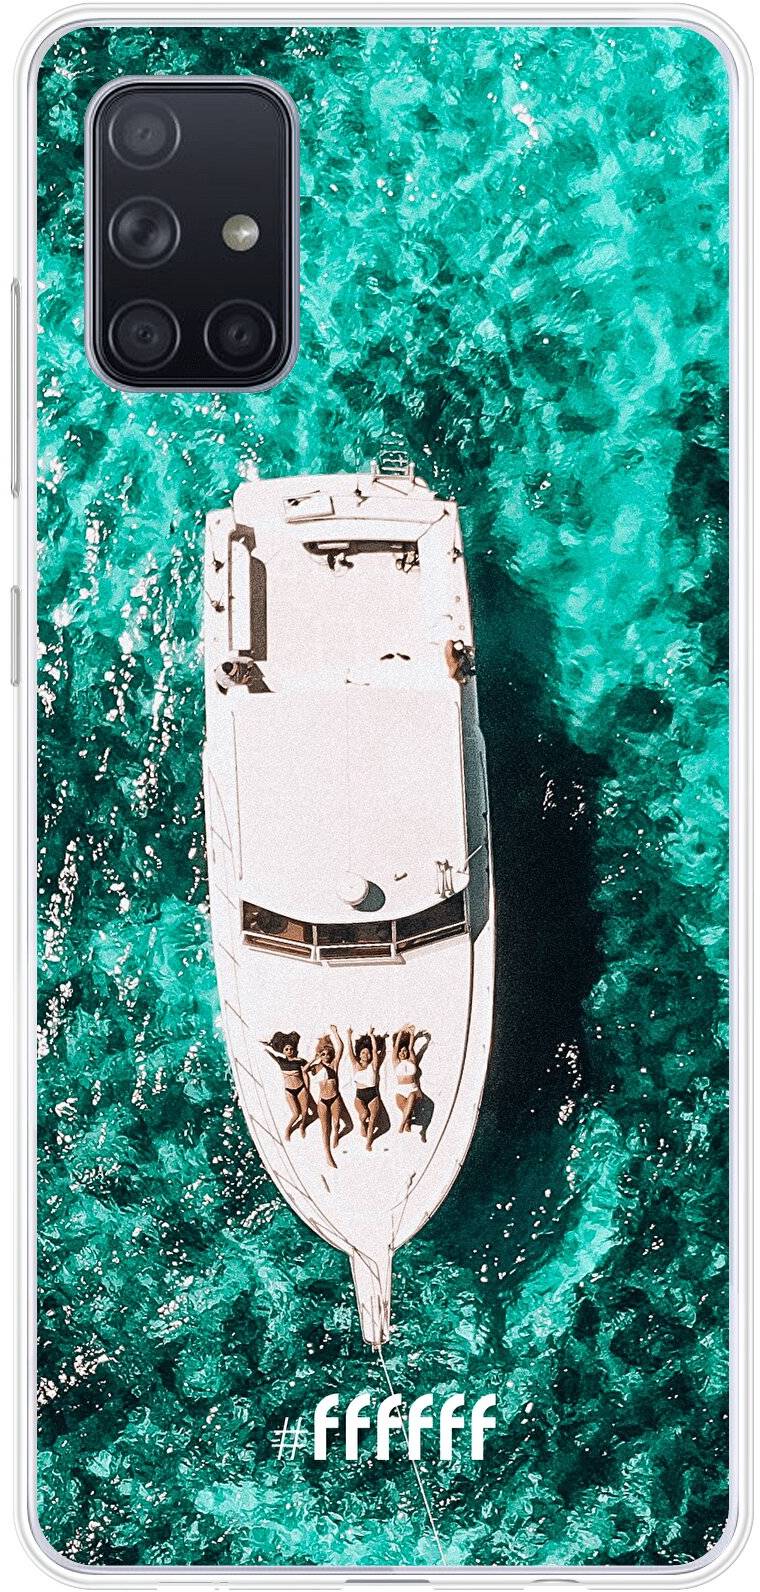 Yacht Life Galaxy A71